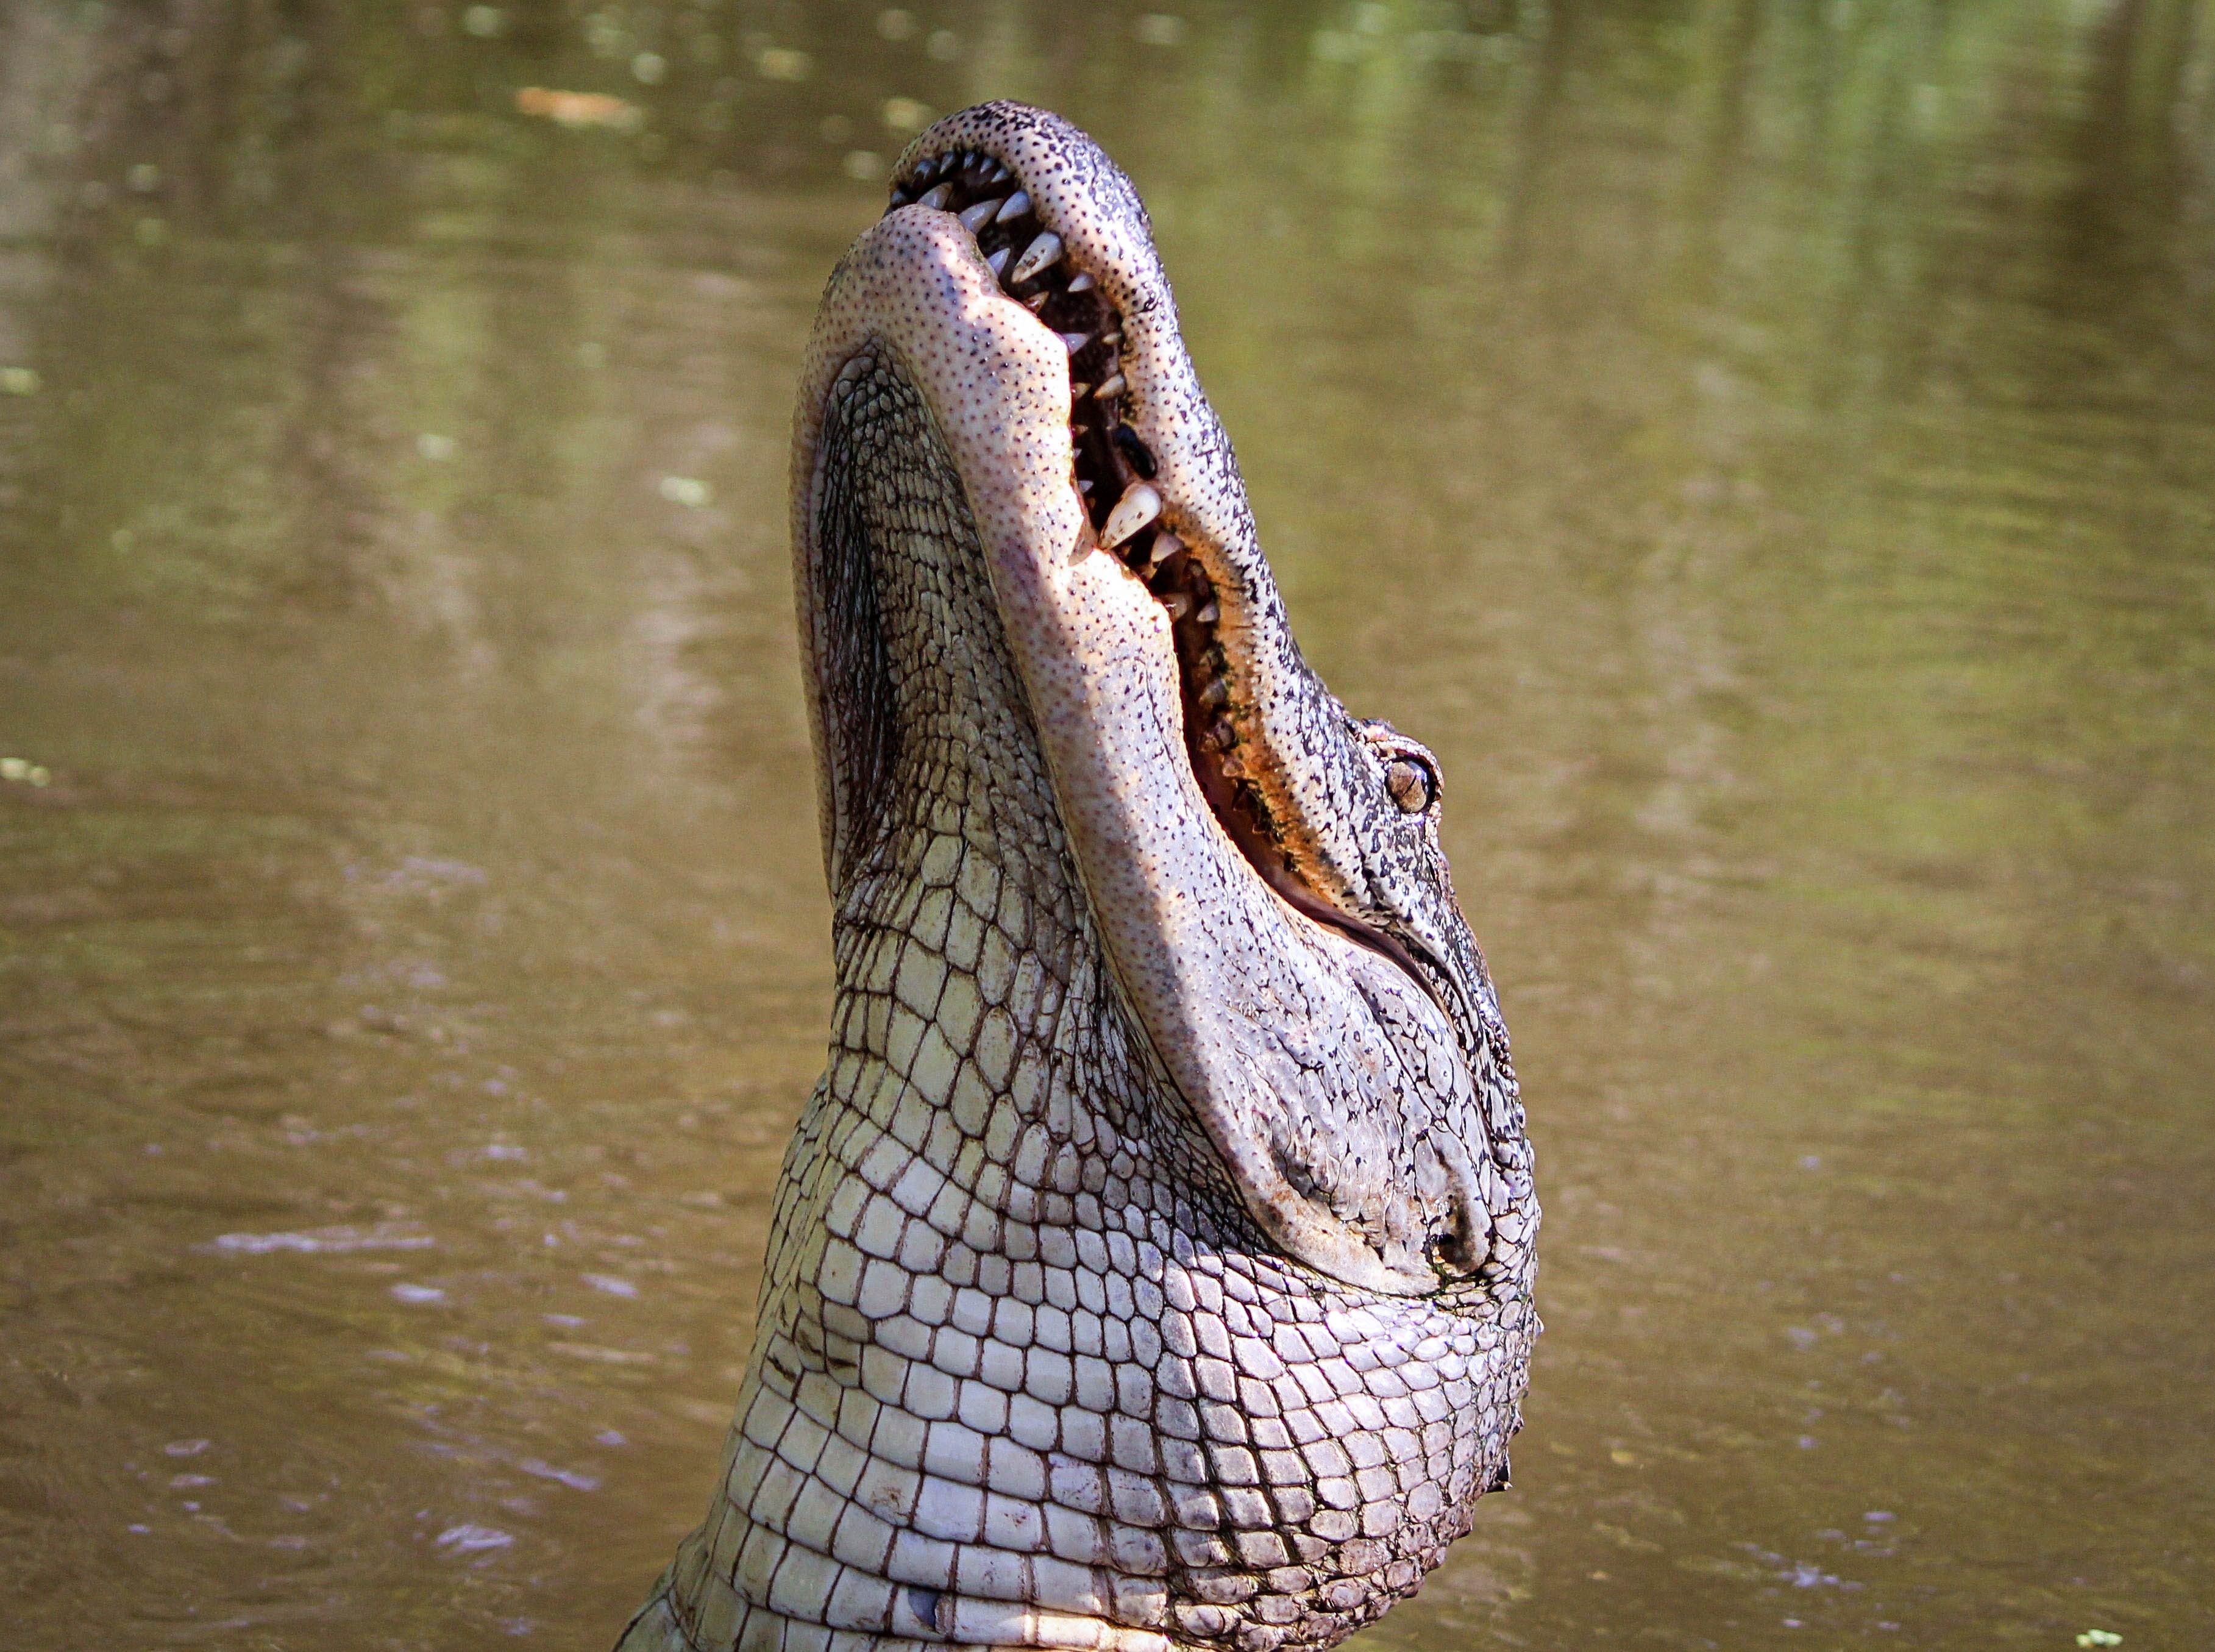 8k Alligator Images